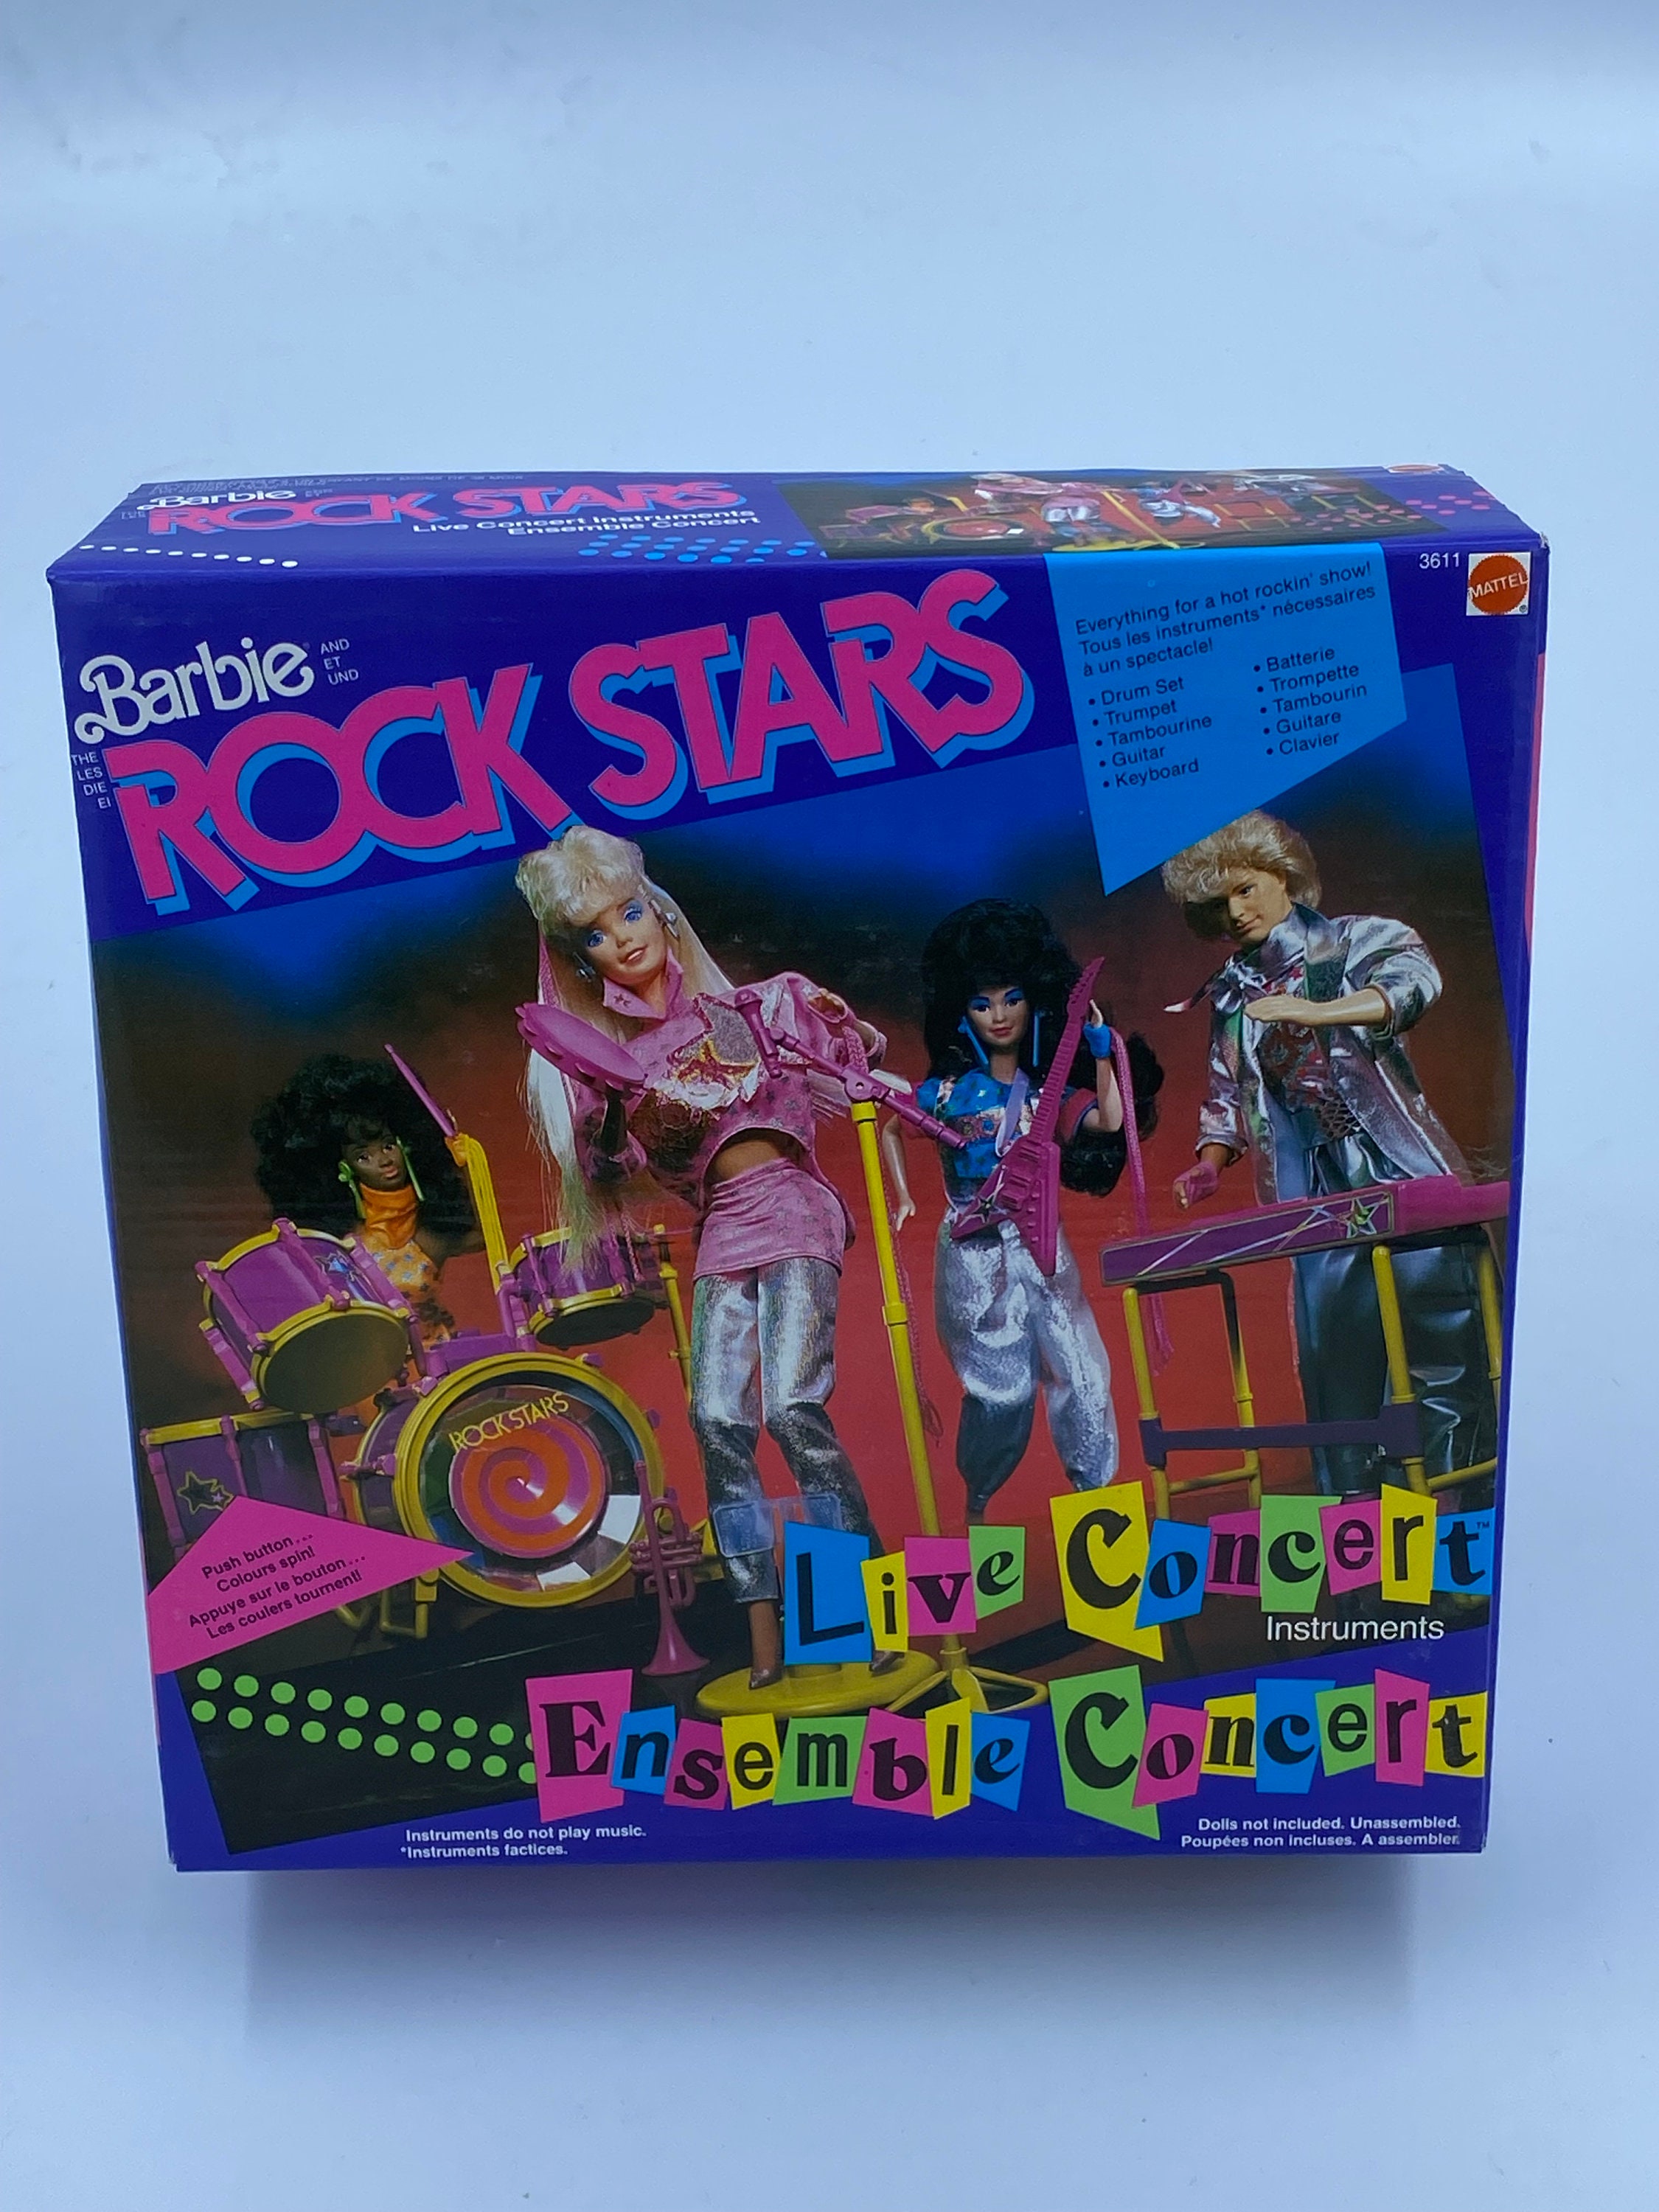 Boneca Barbie Fashionista Loira - Roupa de Rock - Mattel - JP Toys -  Brinquedos e Actions Figures para todas as idades